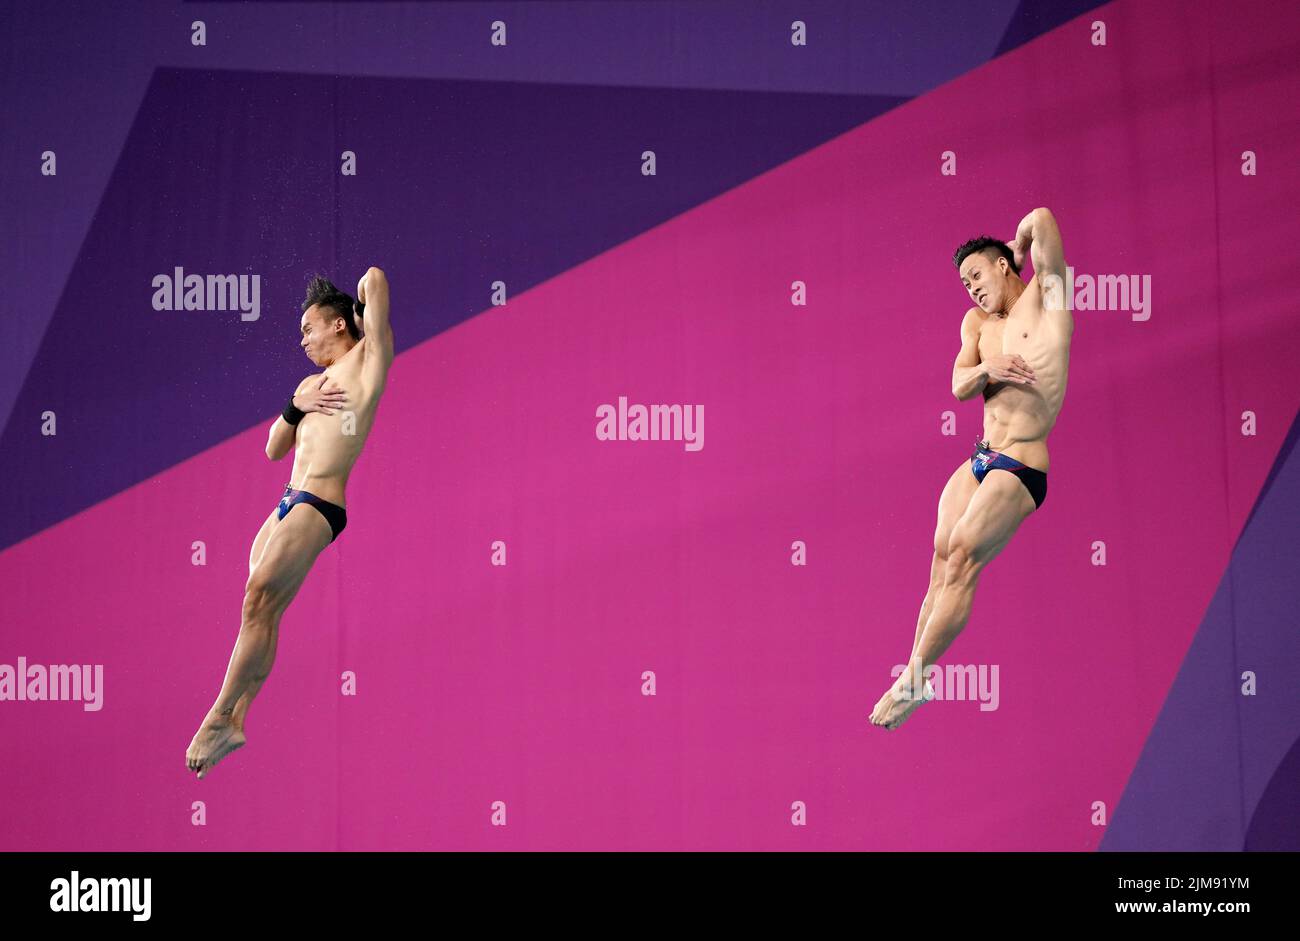 Die Malaysier Yiwei Chew und Tze Liang Ooi während des Men's Synchronized 3m Springboard Finales im Sandwell Aquatics Center am achten Tag der Commonwealth Games 2022 in Birmingham. Bilddatum: Freitag, 5. August 2022. Stockfoto